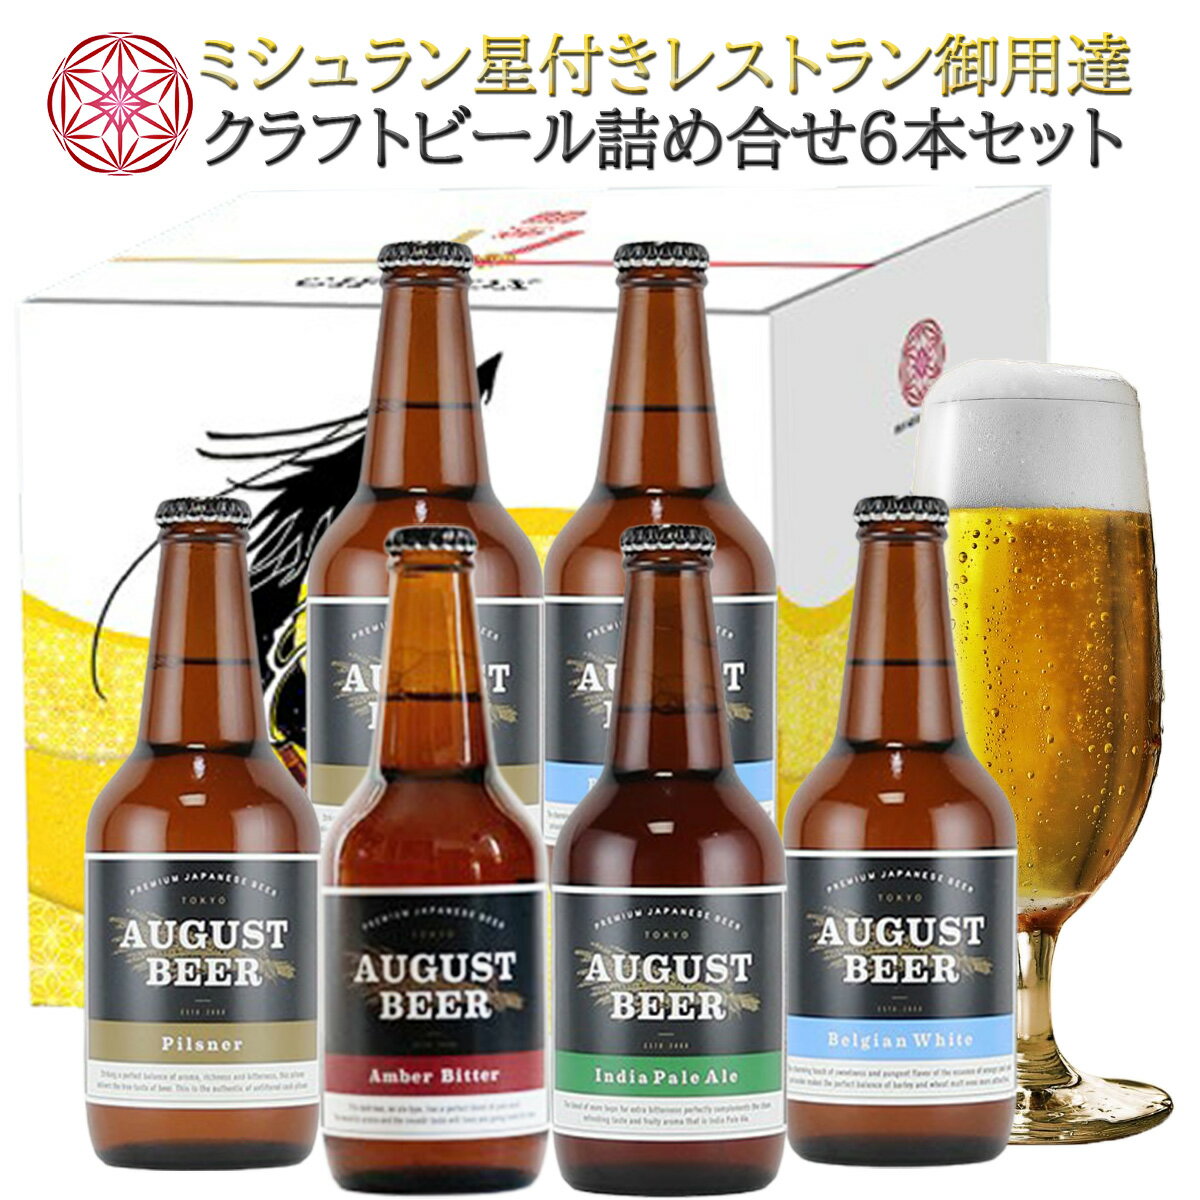 【送料無料】 クラフトビール 【6本